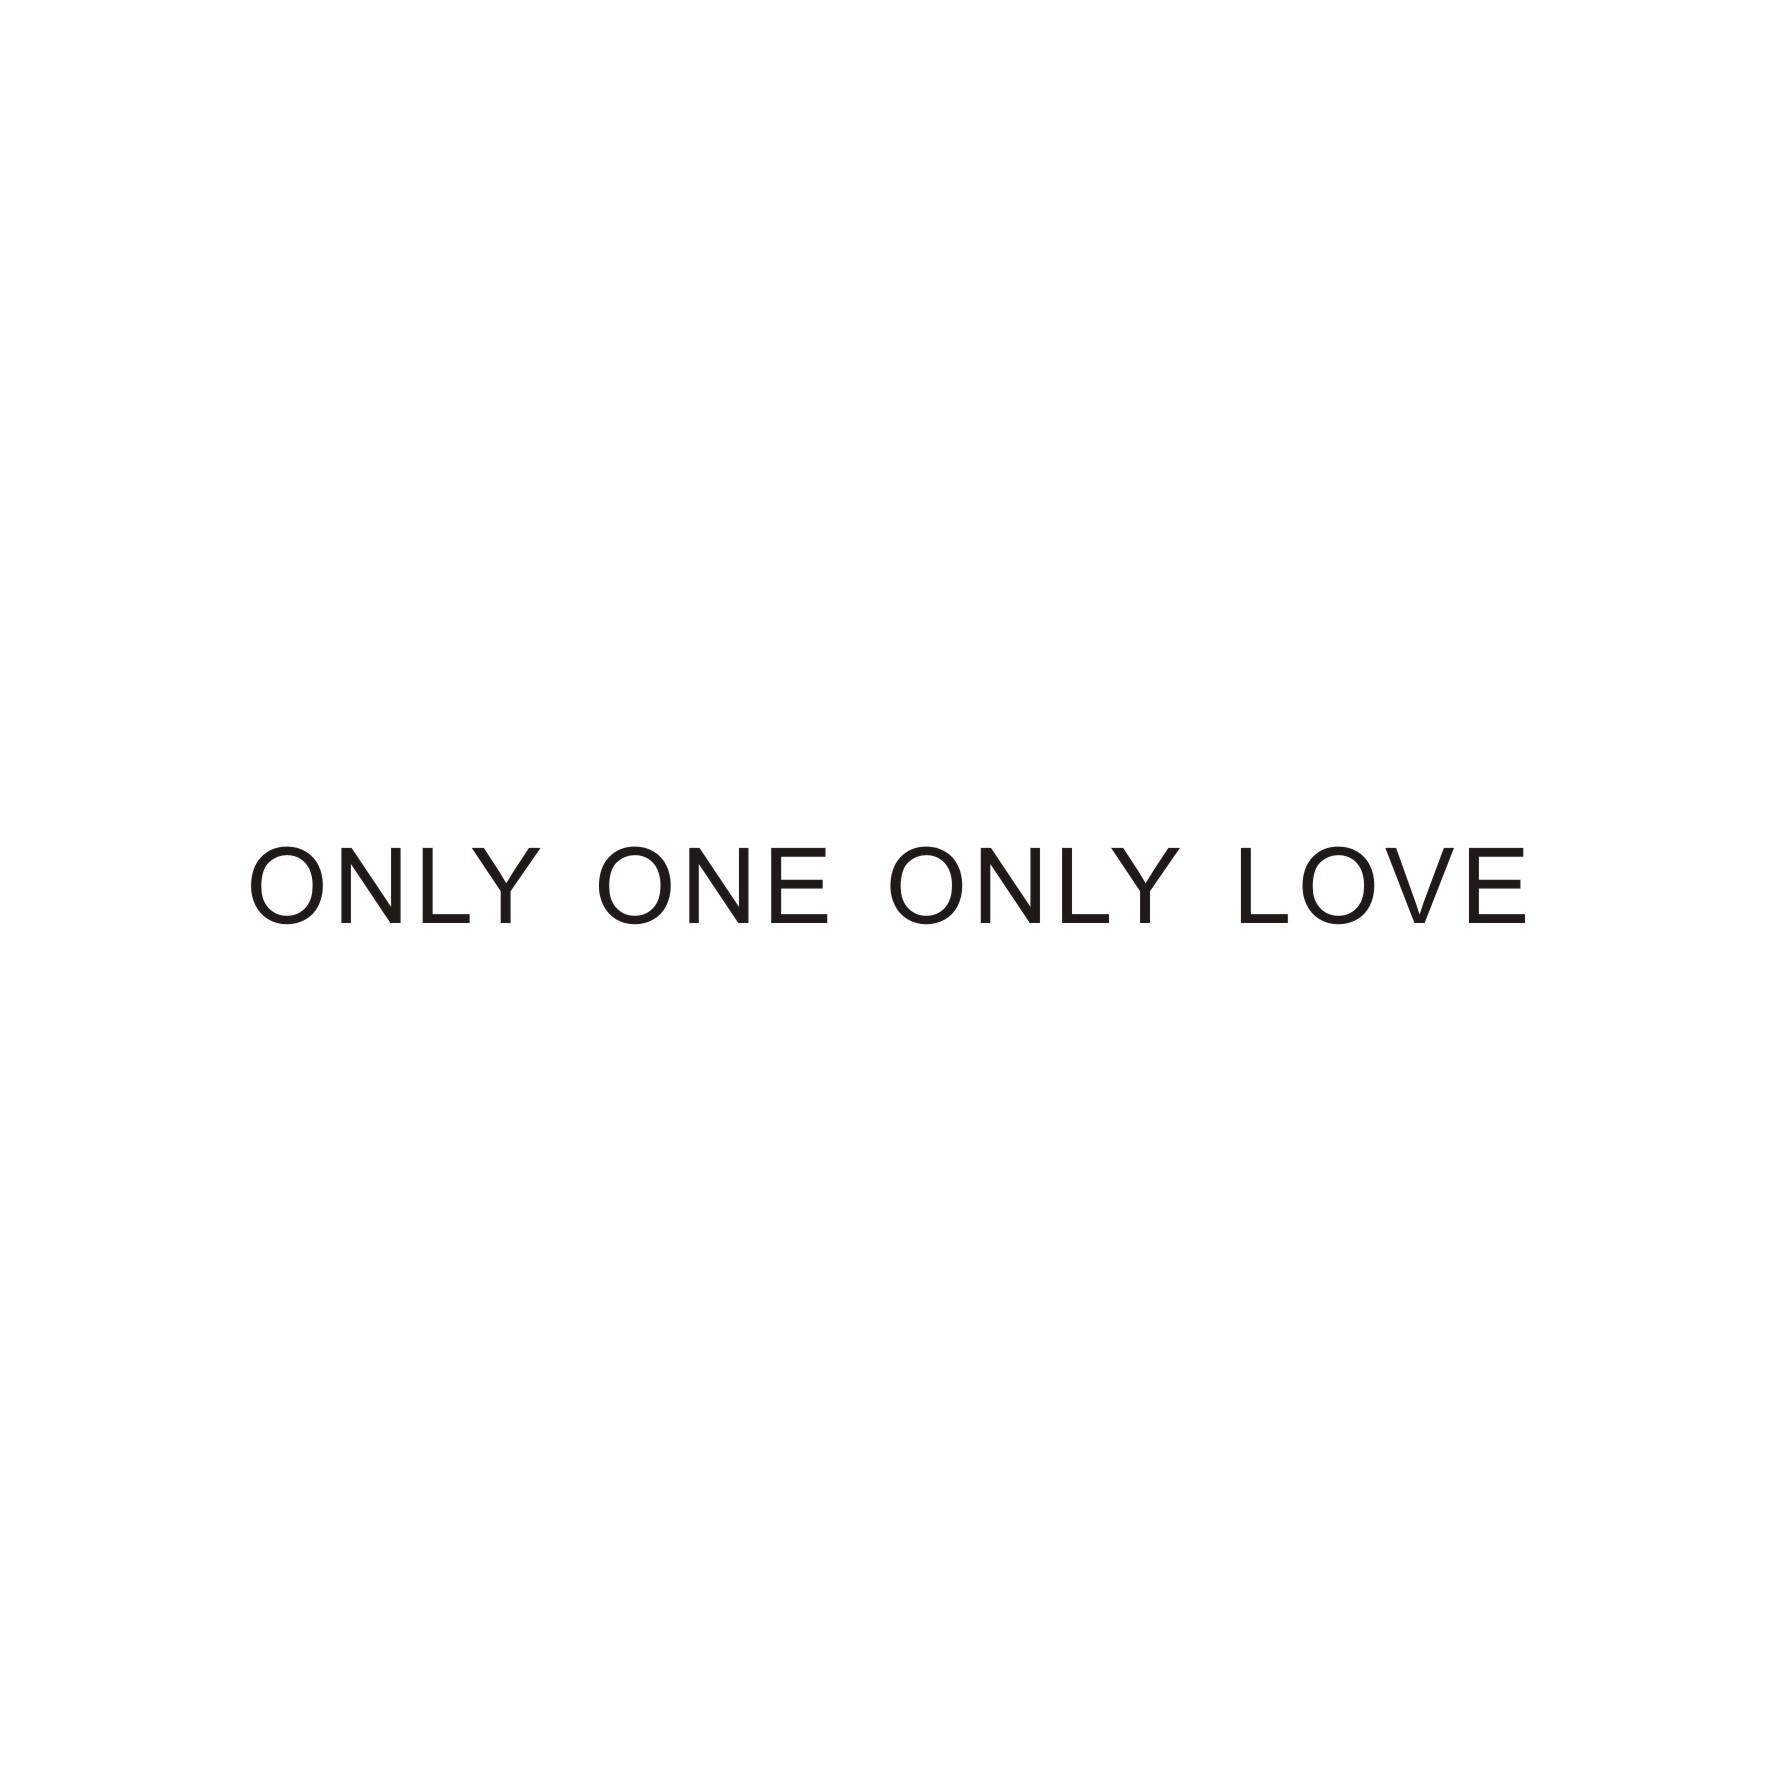  em>only /em>  em>one /em>  em>only /em>  em>love /em>